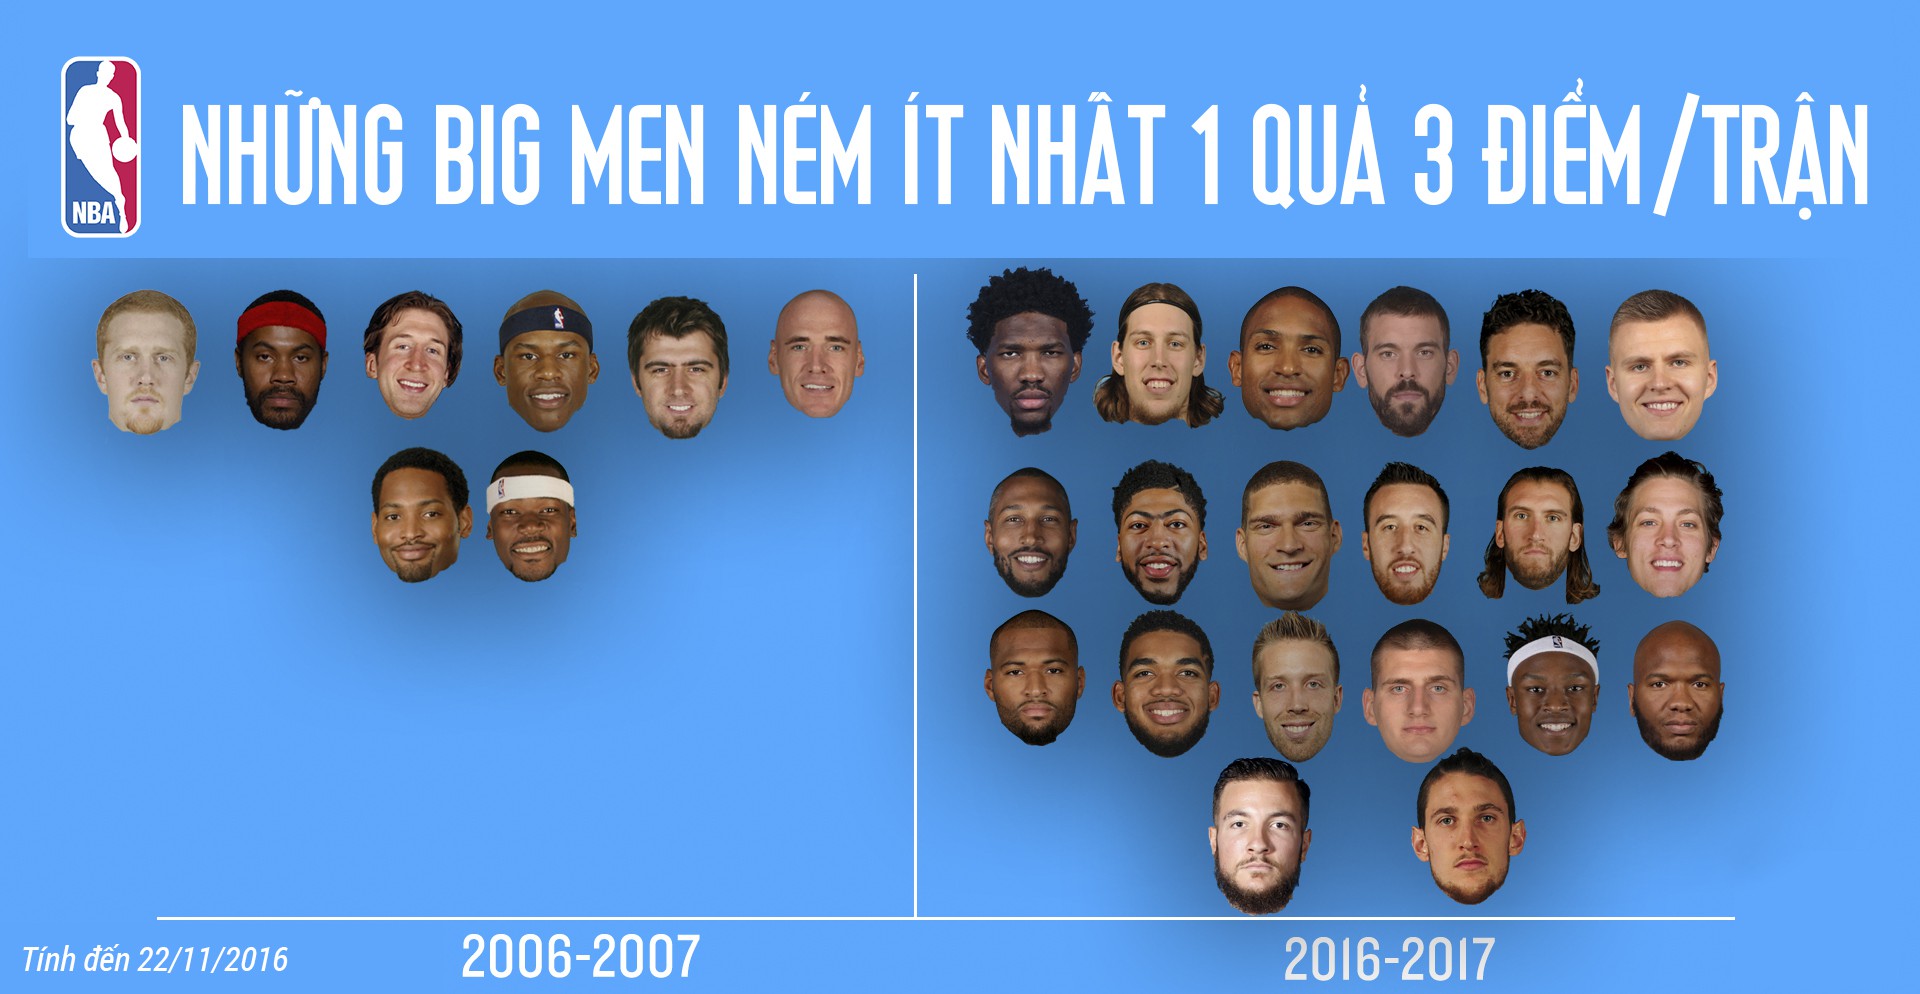 Số lượng big men có xu hướng ném 3 điểm tại NBA ngày càng tăng trong vài năm qua